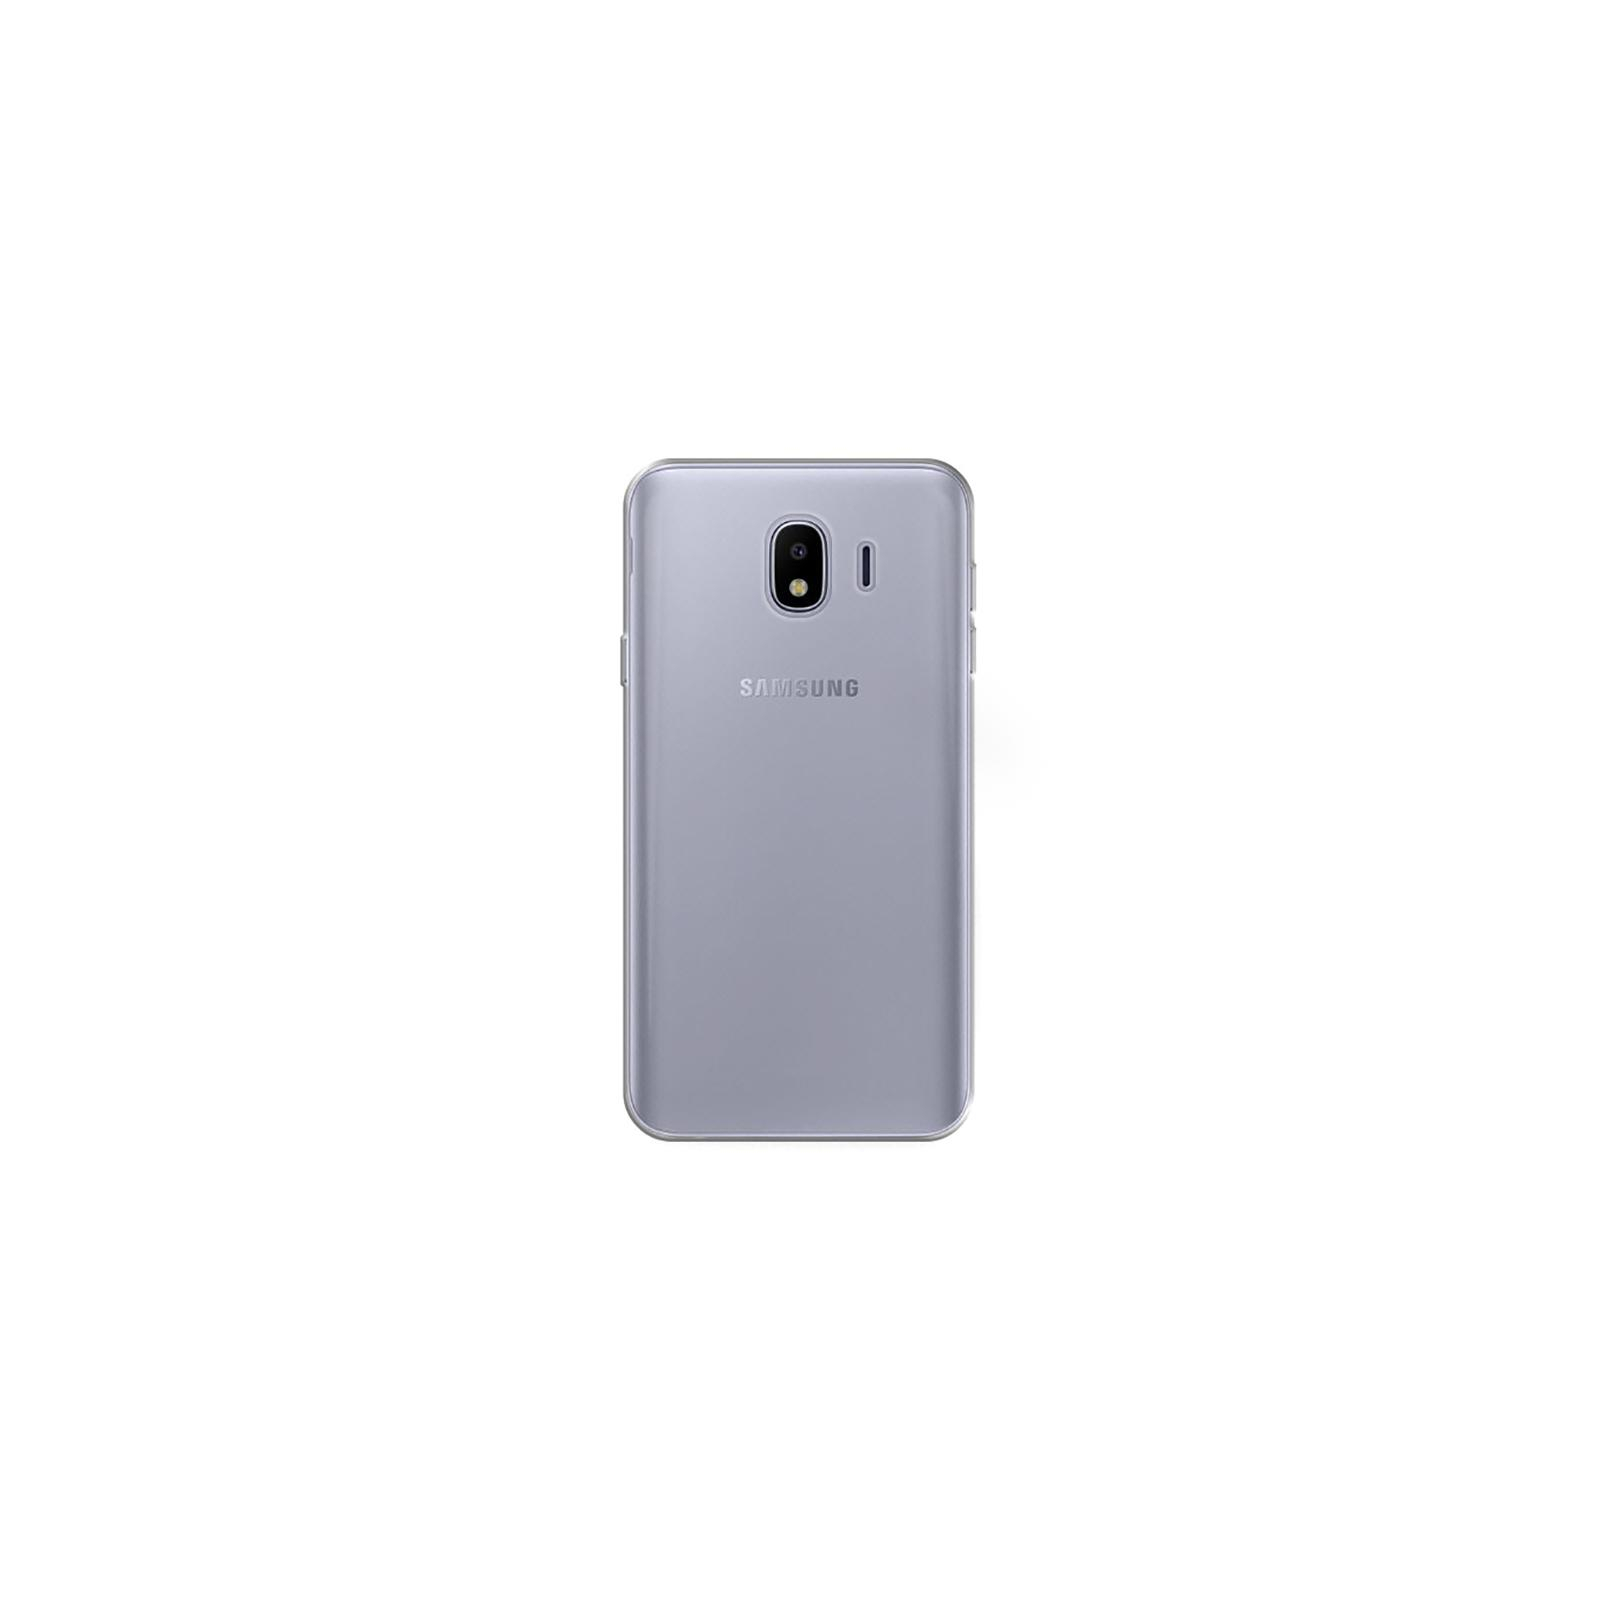 Чехол для мобильного телефона Laudtec для Samsung J4/J400 Clear tpu (Transperent) (LC-J400F) изображение 3